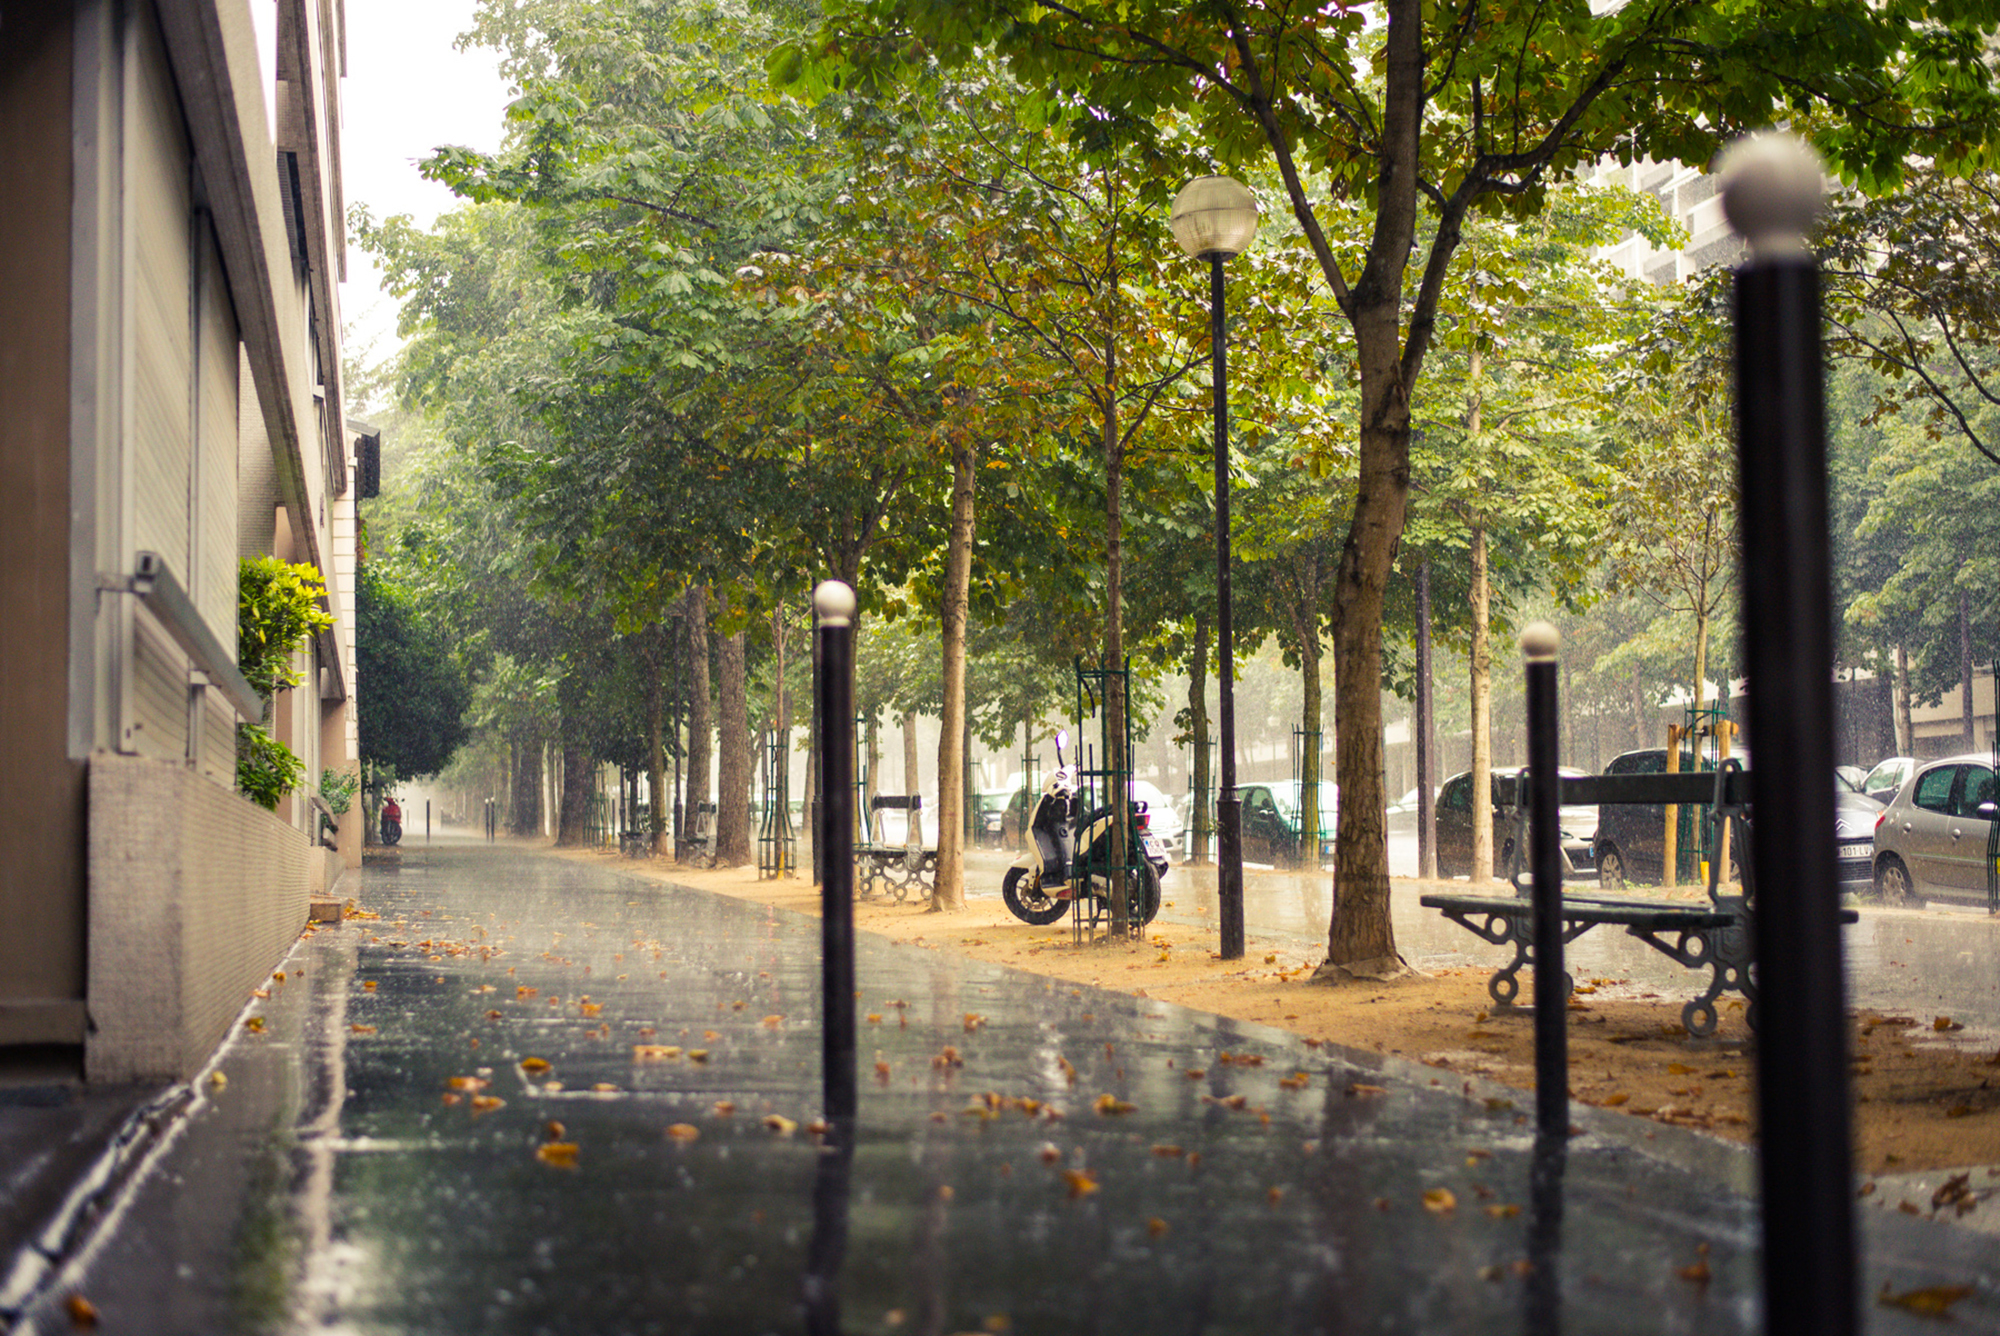 Обои на стол на улице. Улица Моконсей Париж. Дождливая улица. Улица с деревьями.